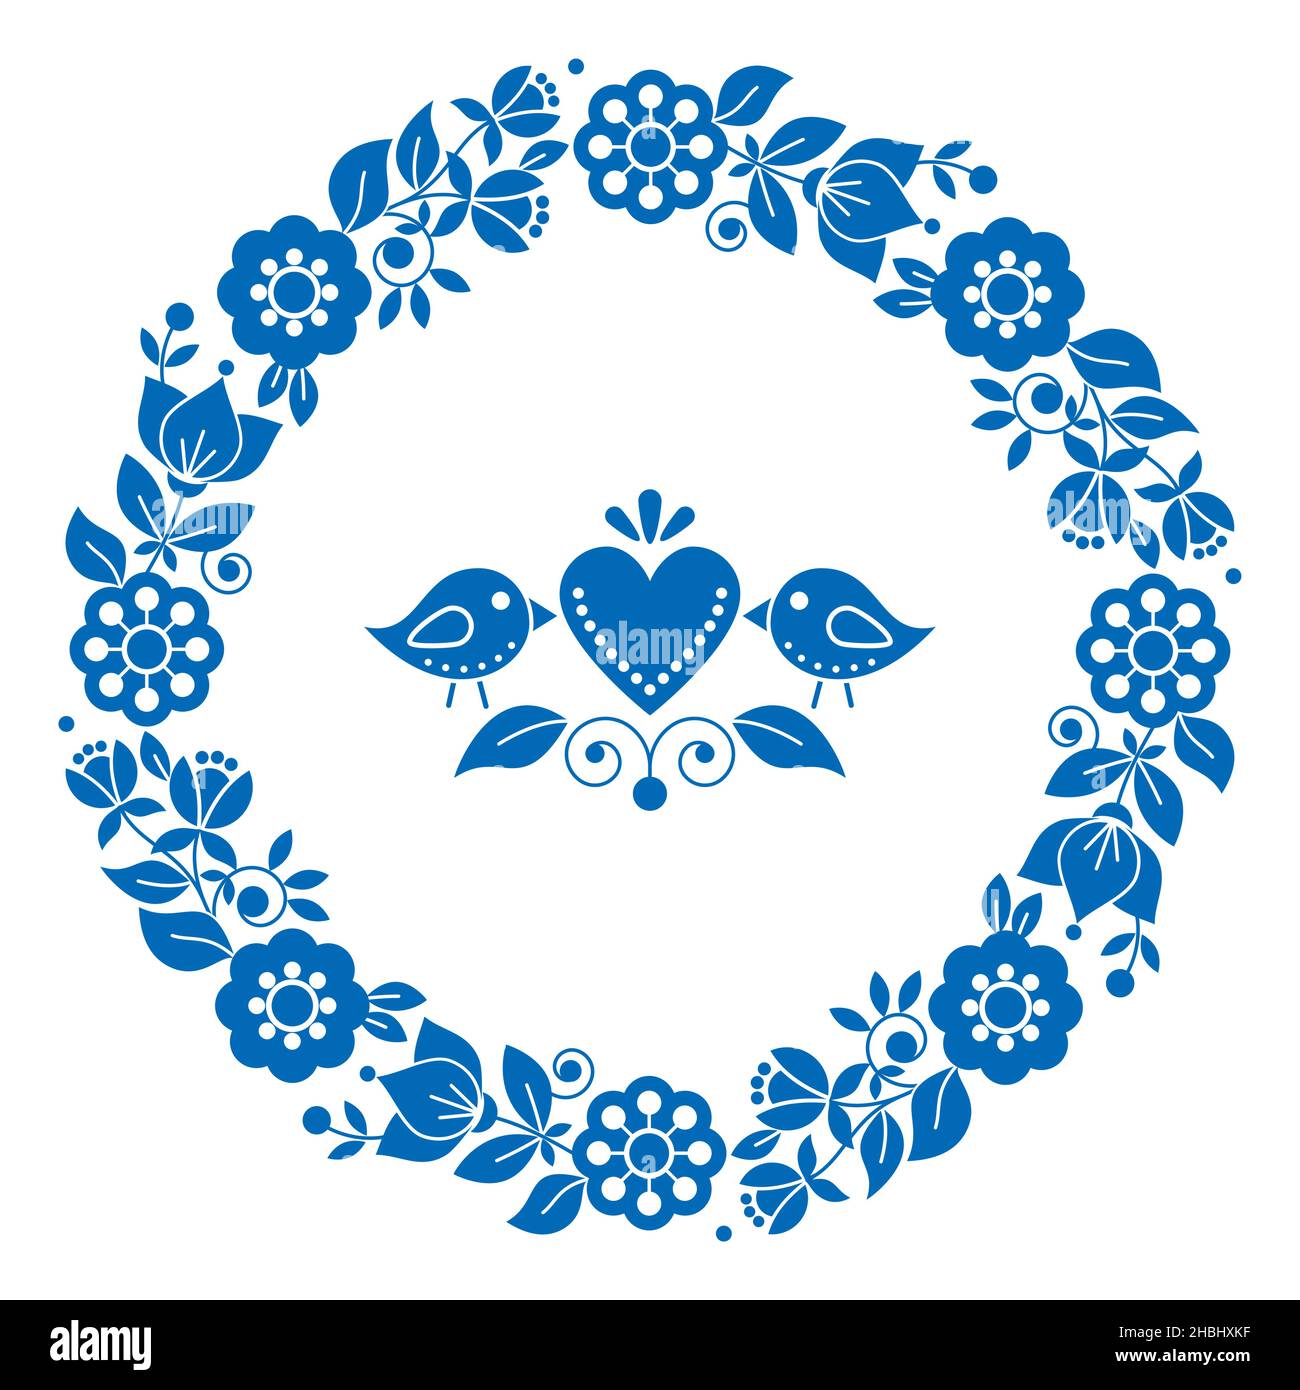 Skandinavische, nordische Volkskunst Vektor Valentinstag Grußkarte oder Hochzeit Einladung Design, schwedisches Muster mit Blumenkranz, Vögel und Herz i Stock Vektor